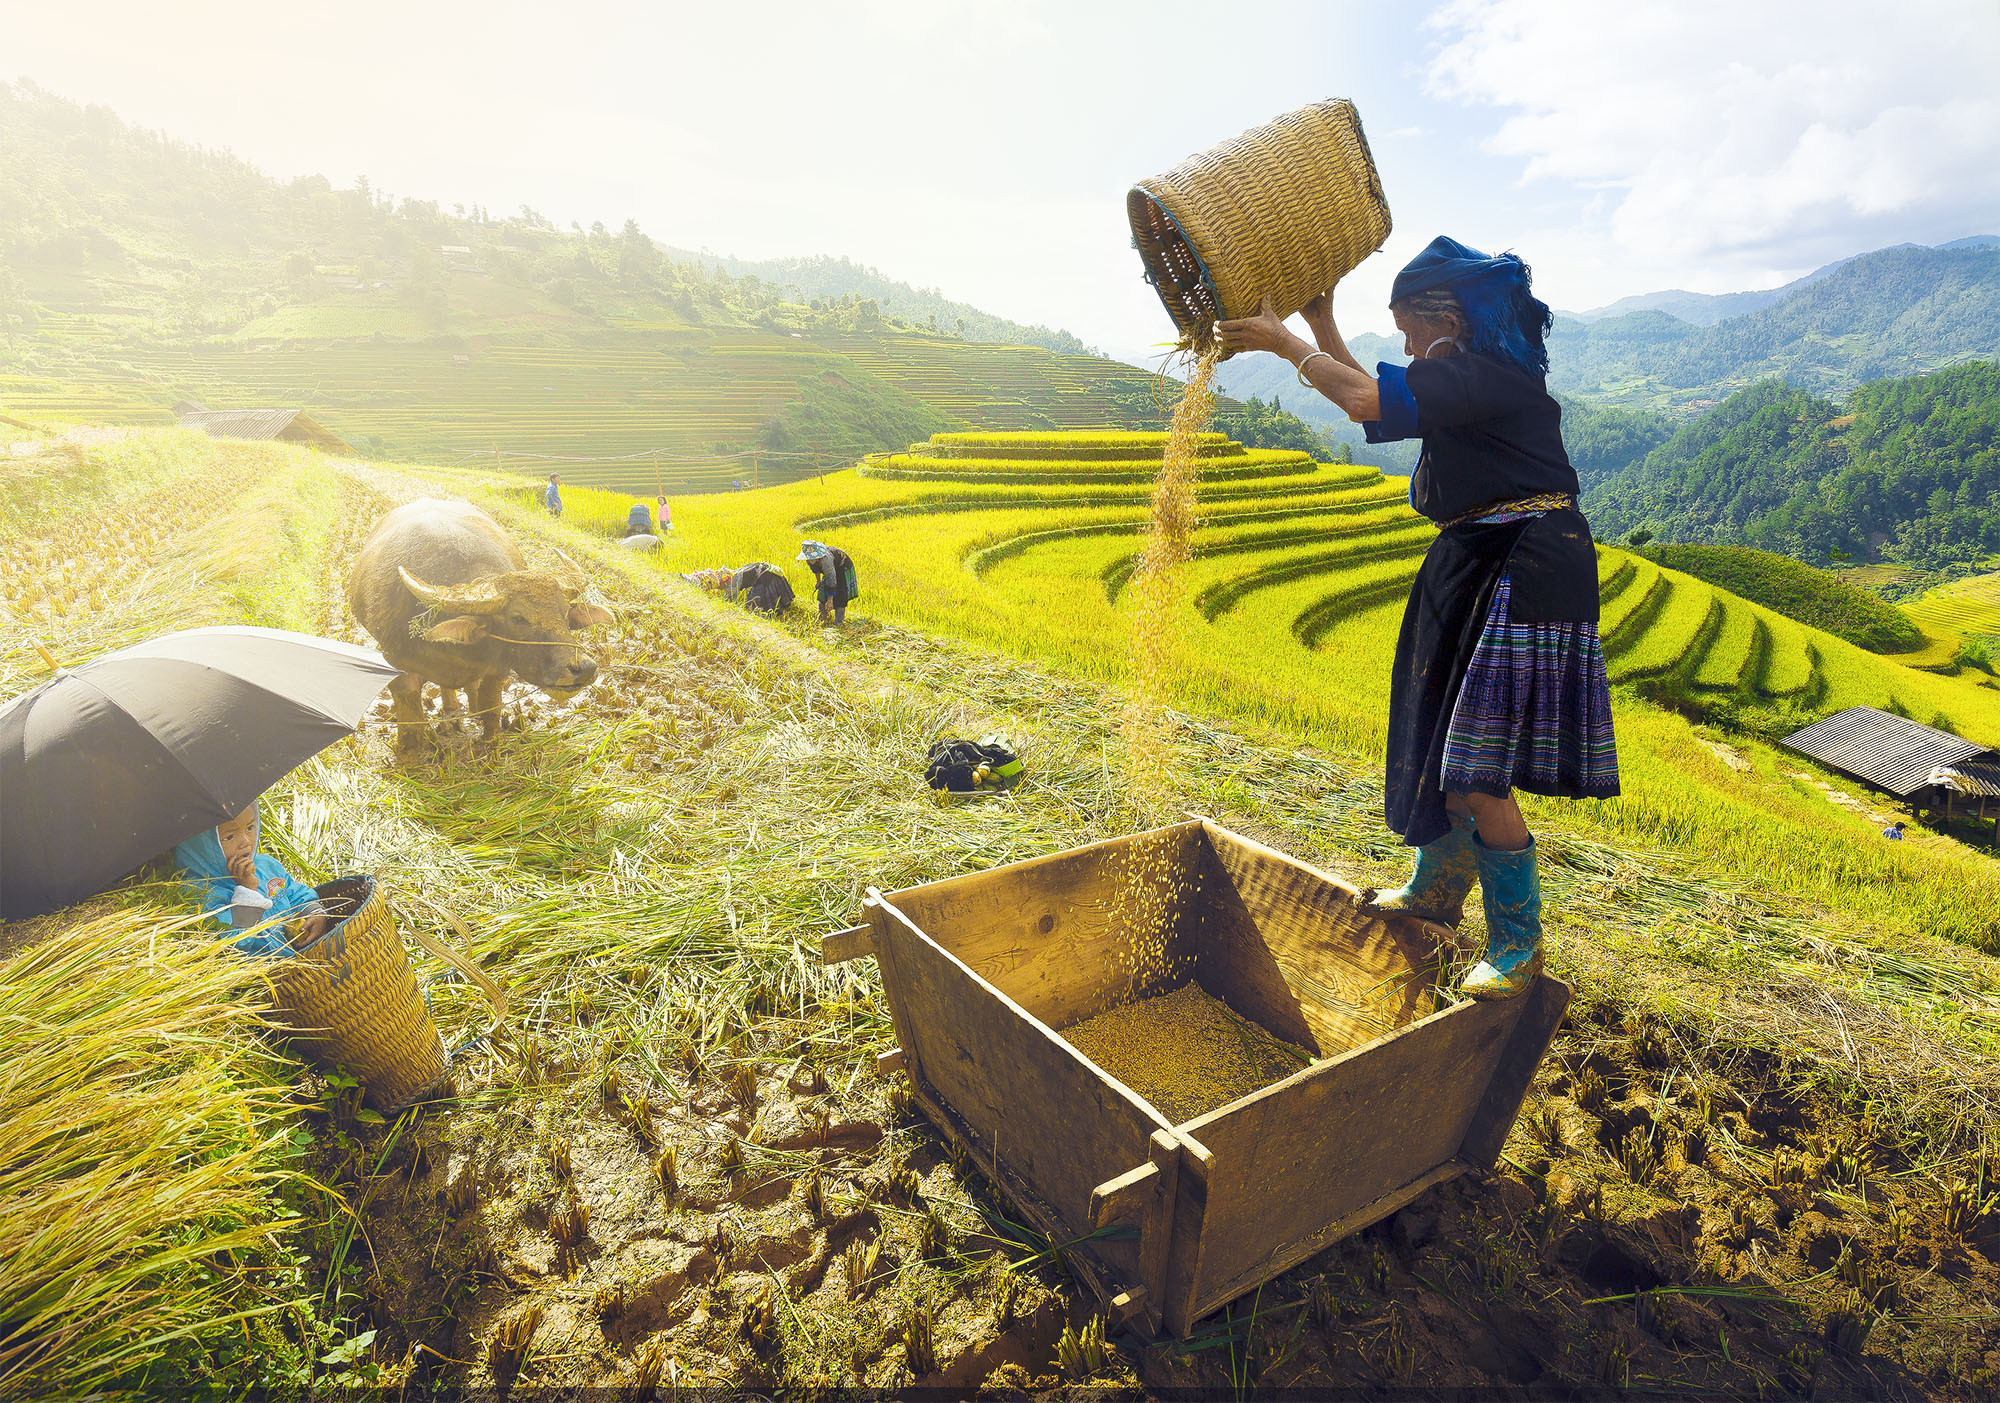 V zemědělství pracují ve Vietnamu převážně ženy. Ty se pak velmi často potýkají s nižší úrodou a tedy nedostatkem obživy pro sebe i své děti